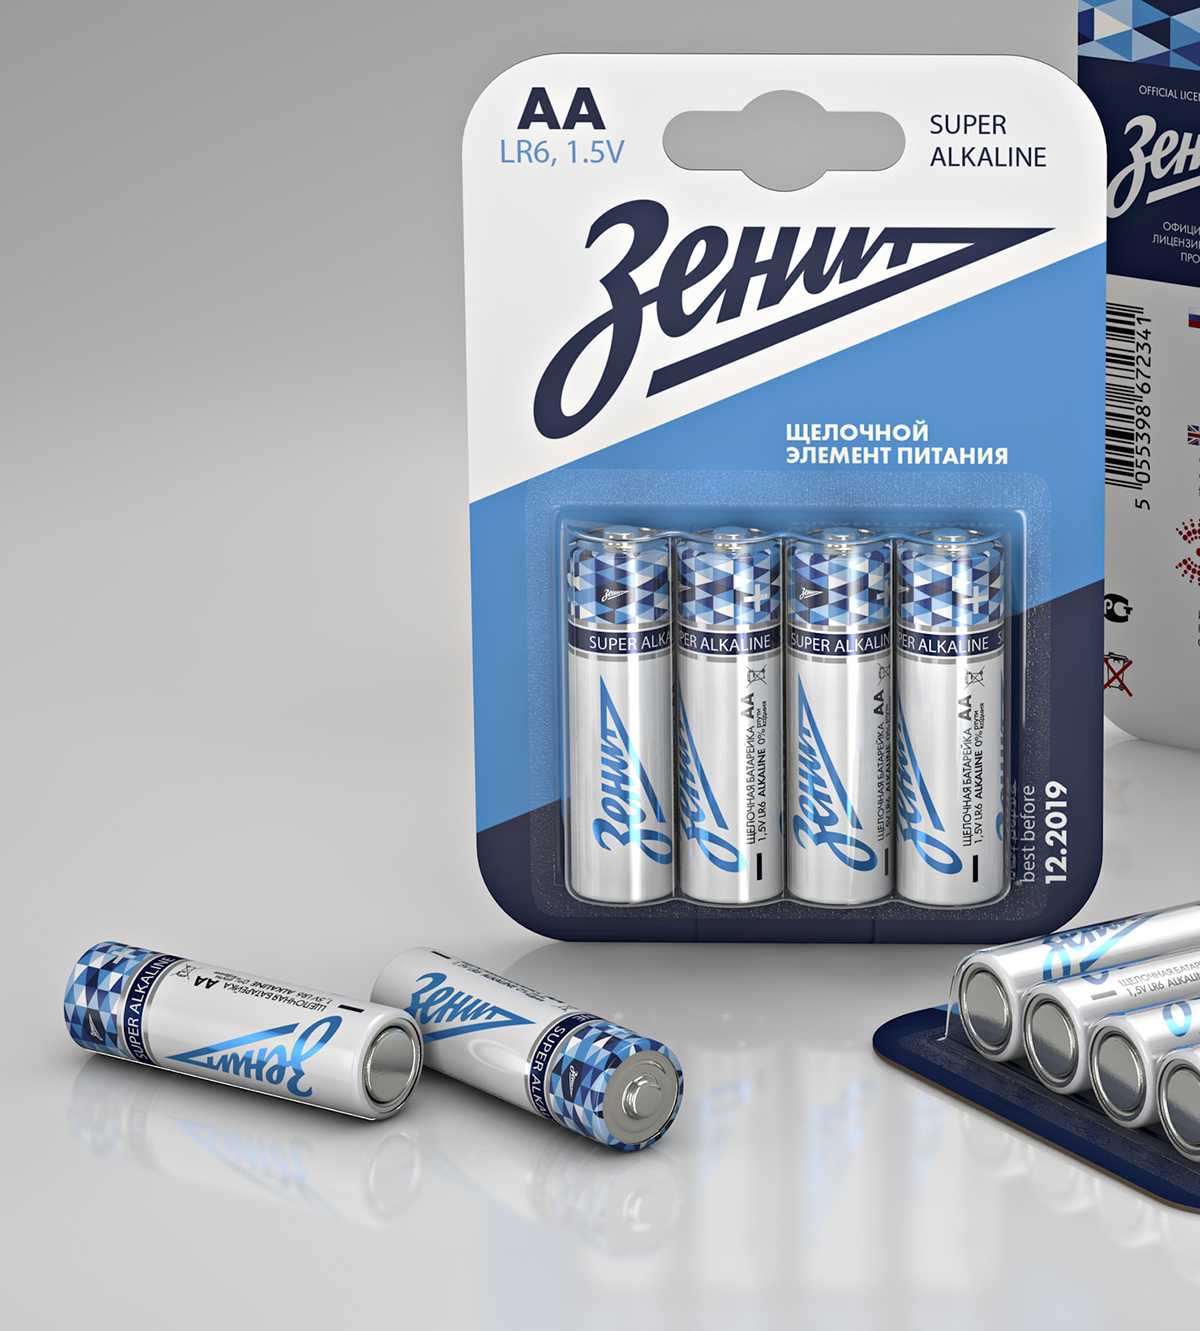 Packaging design of Zenit Batteries by Vladimir Shmoylov